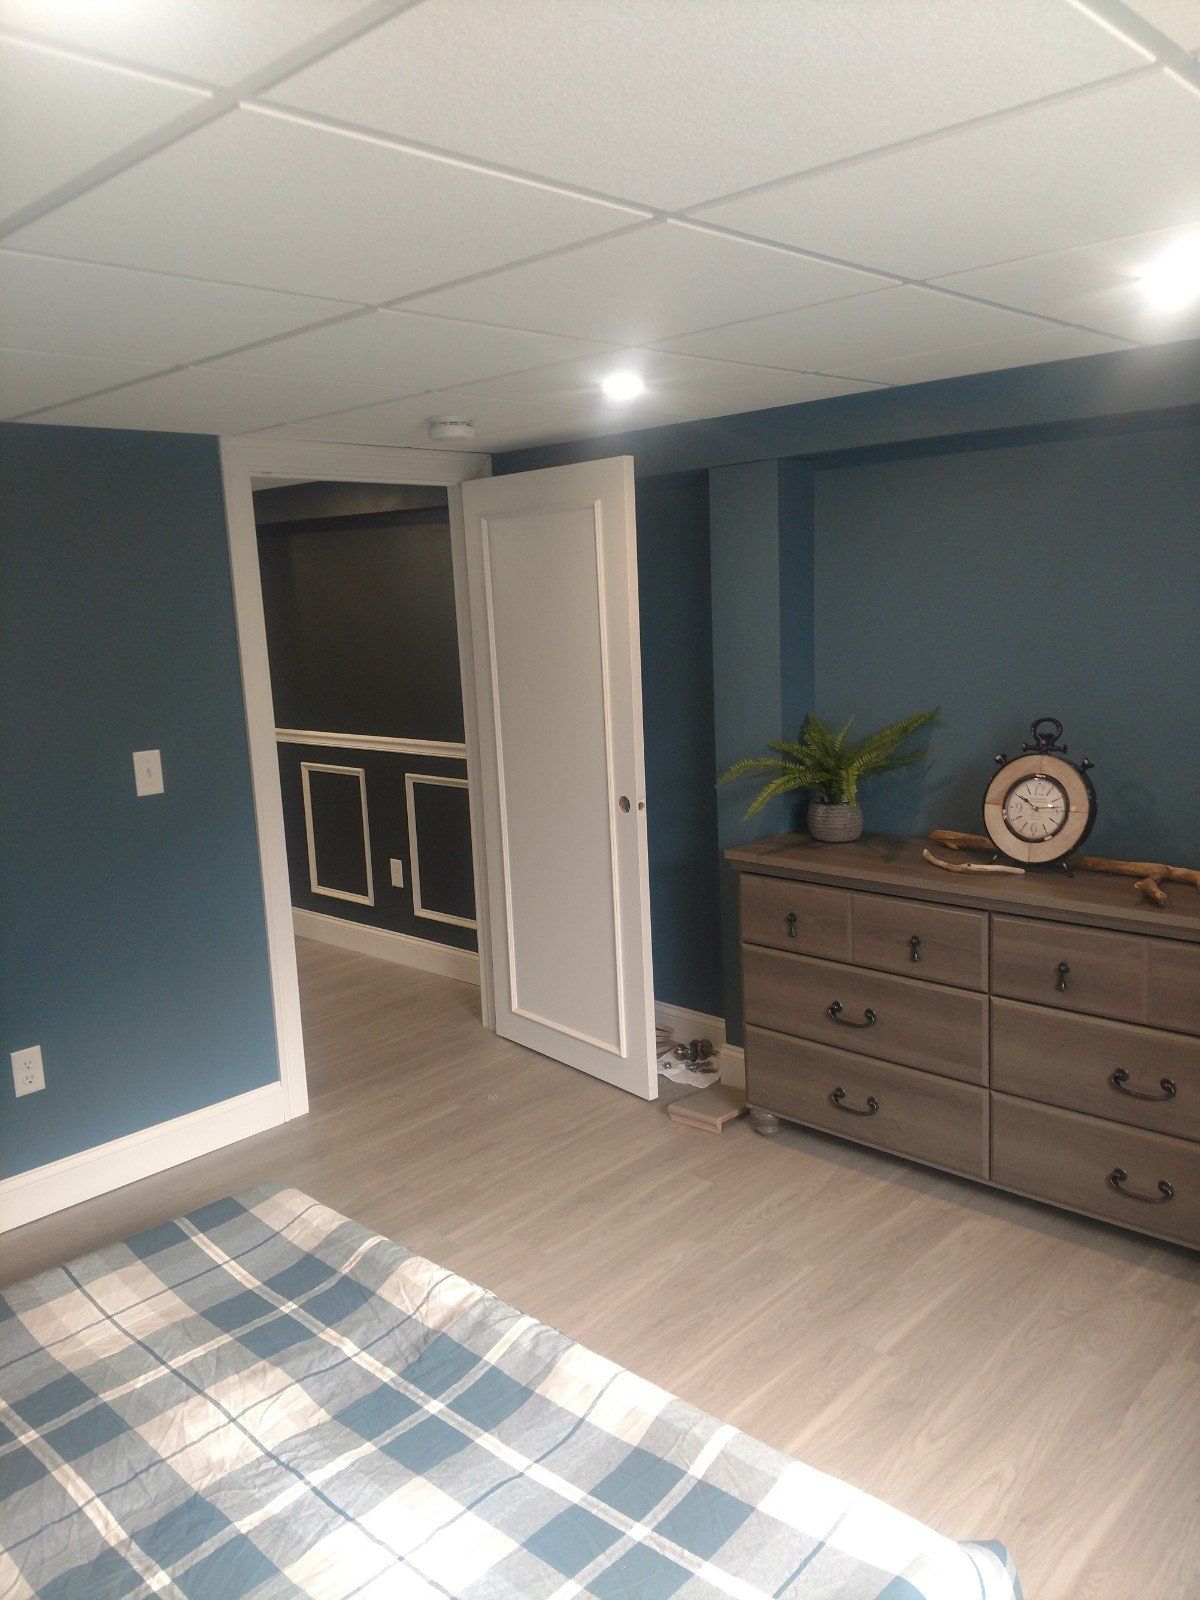 Residential Home Repair — Bedroom 1 in Allenstown, NH